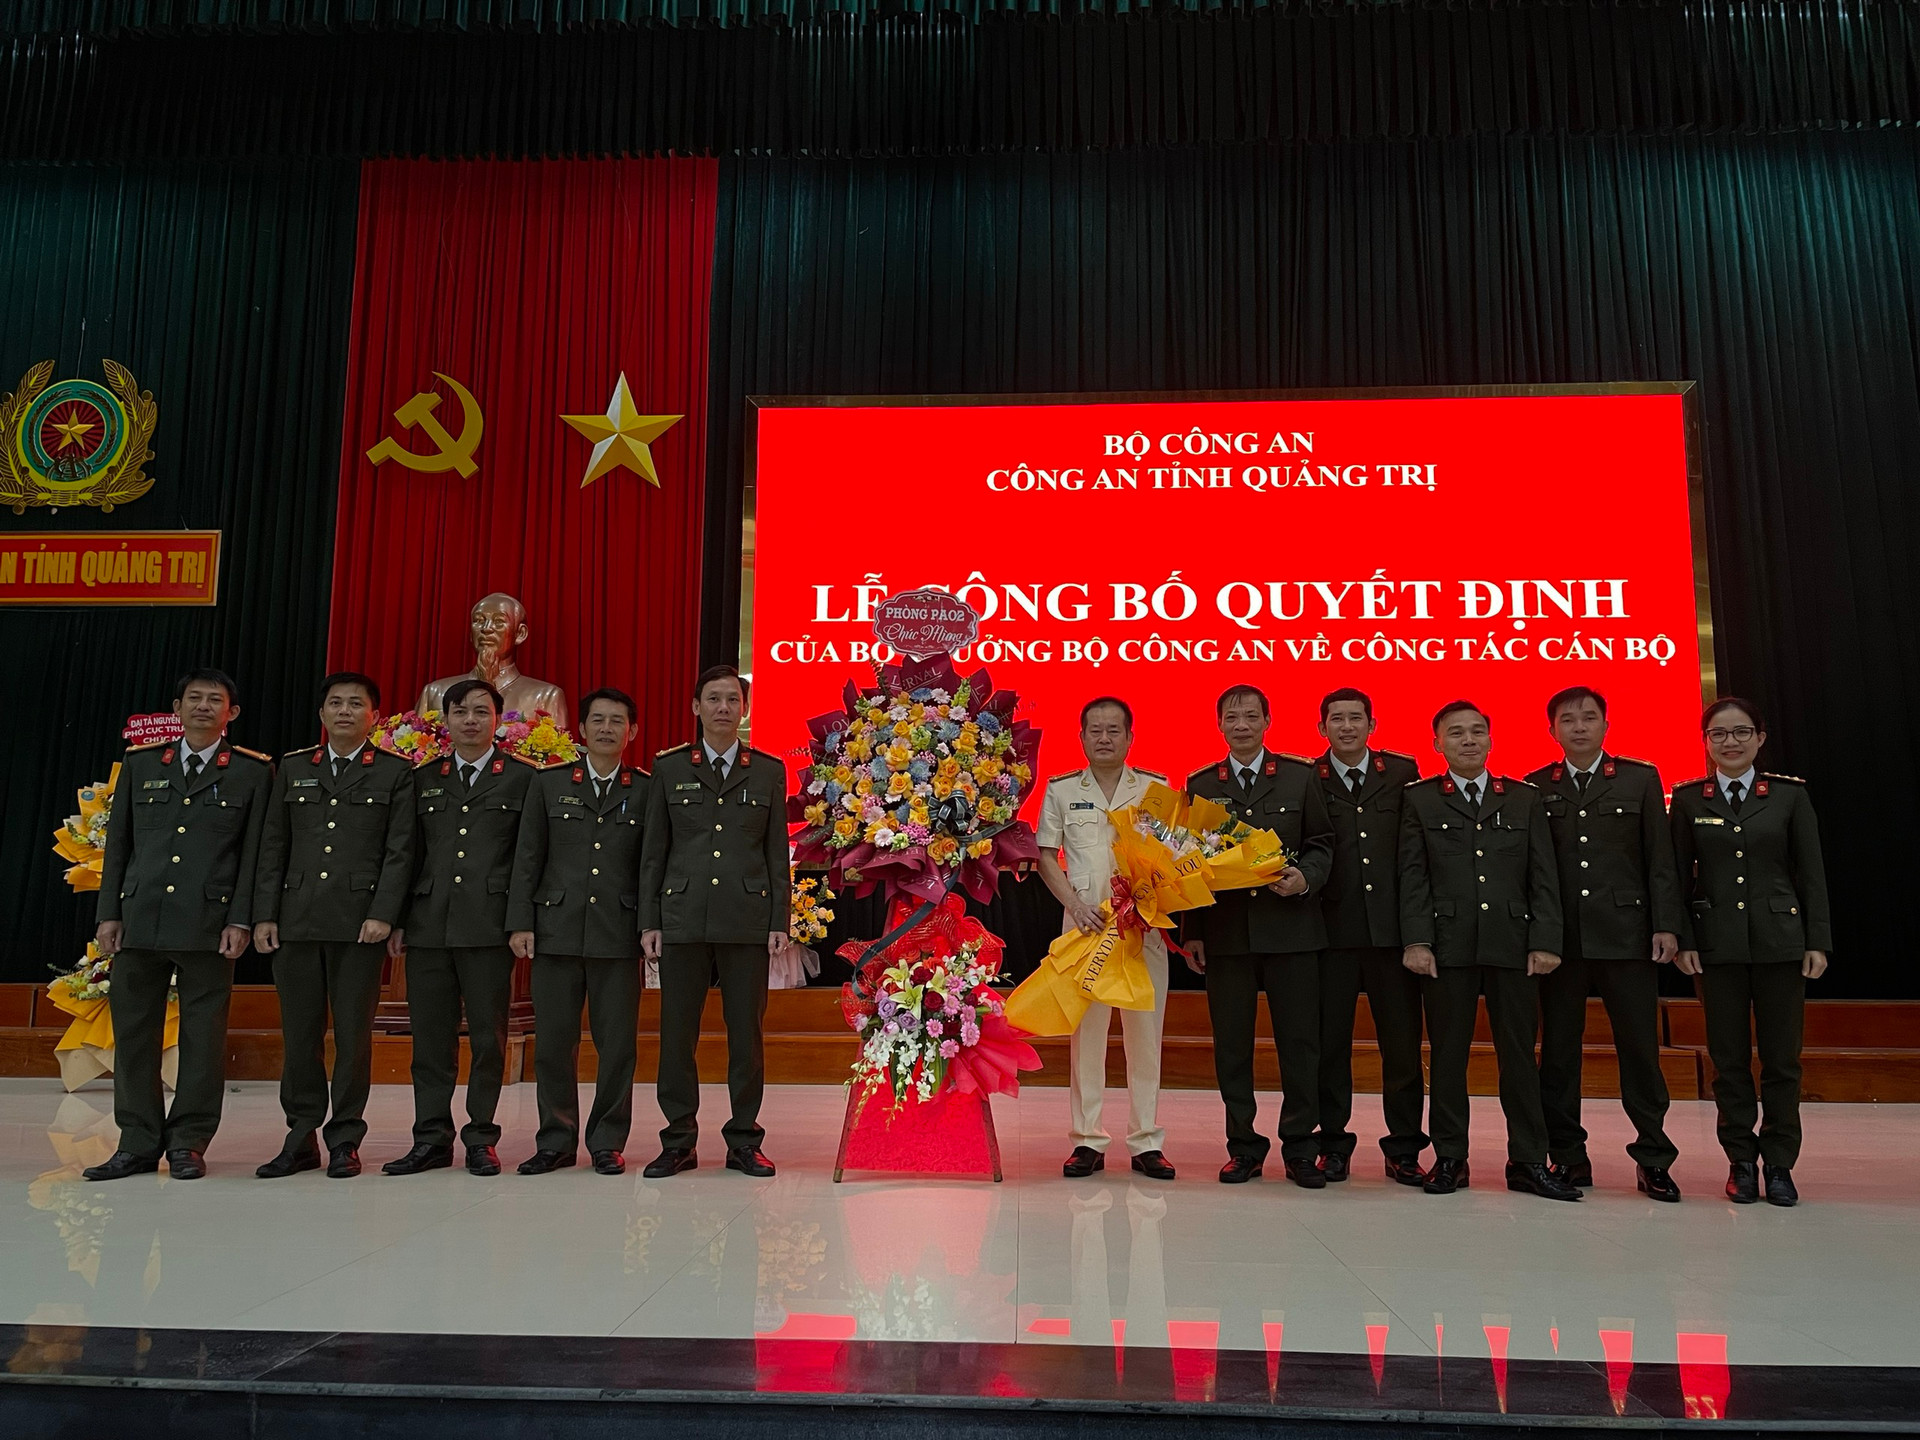 Thượng tá Lê Phi Hùng giữ chức vụ Phó Giám đốc Công an tỉnh Quảng Trị kể từ ngày 2/12/2022. Ảnh: LD.